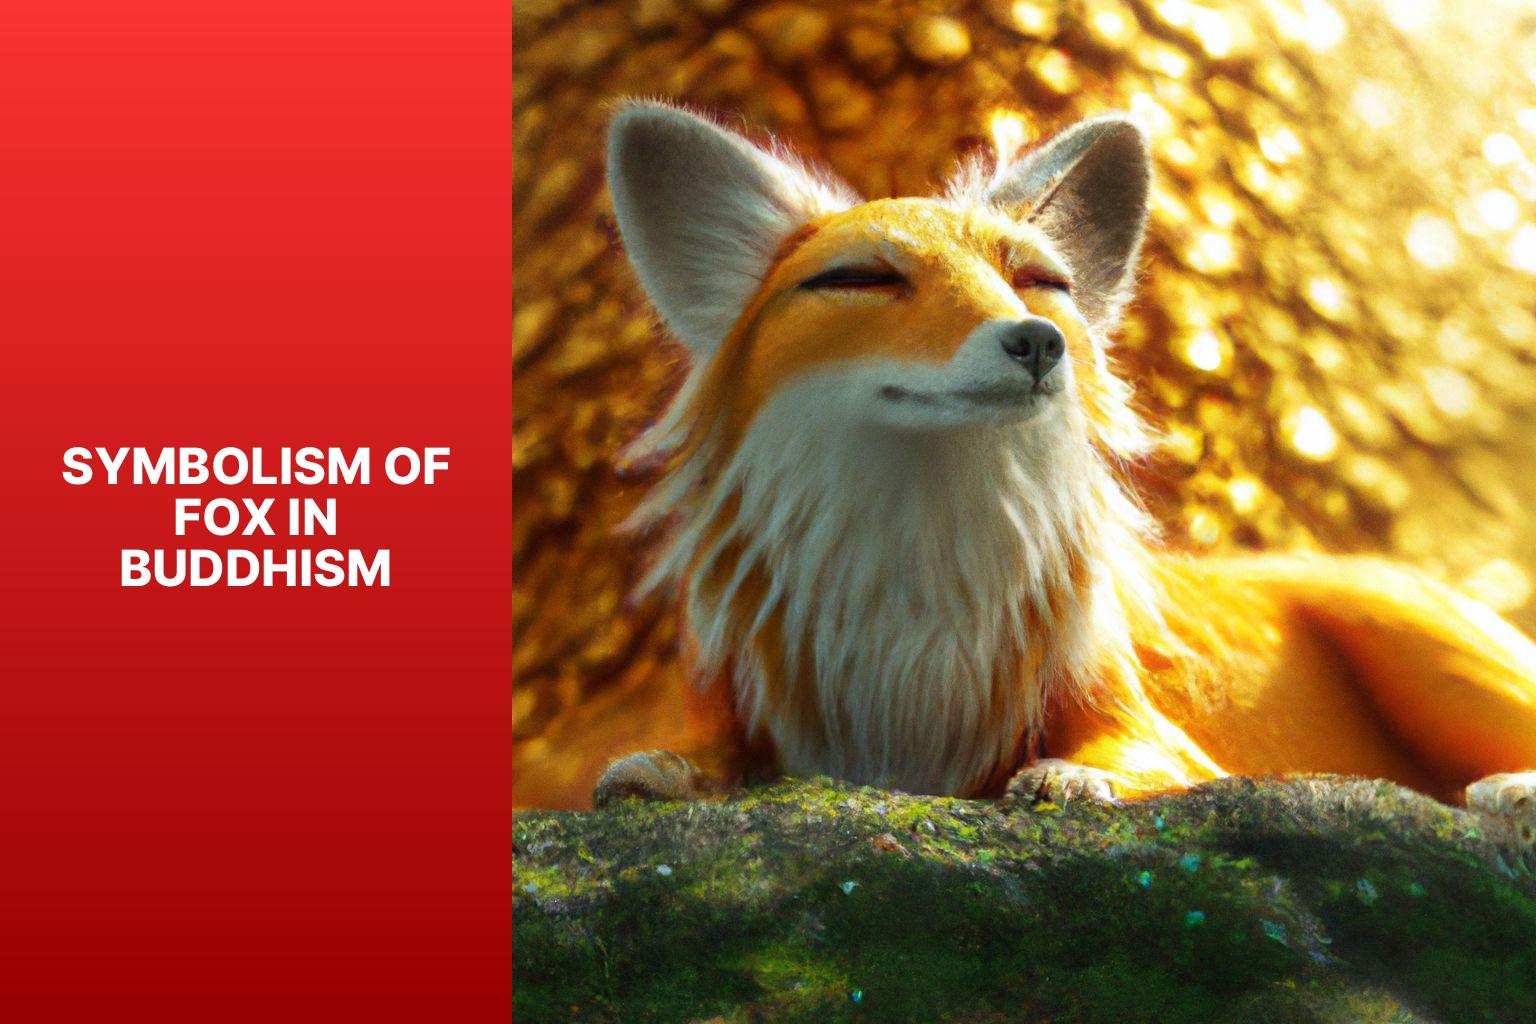 Symbolism of Fox in Buddhism - Fox Myths in Buddhism 